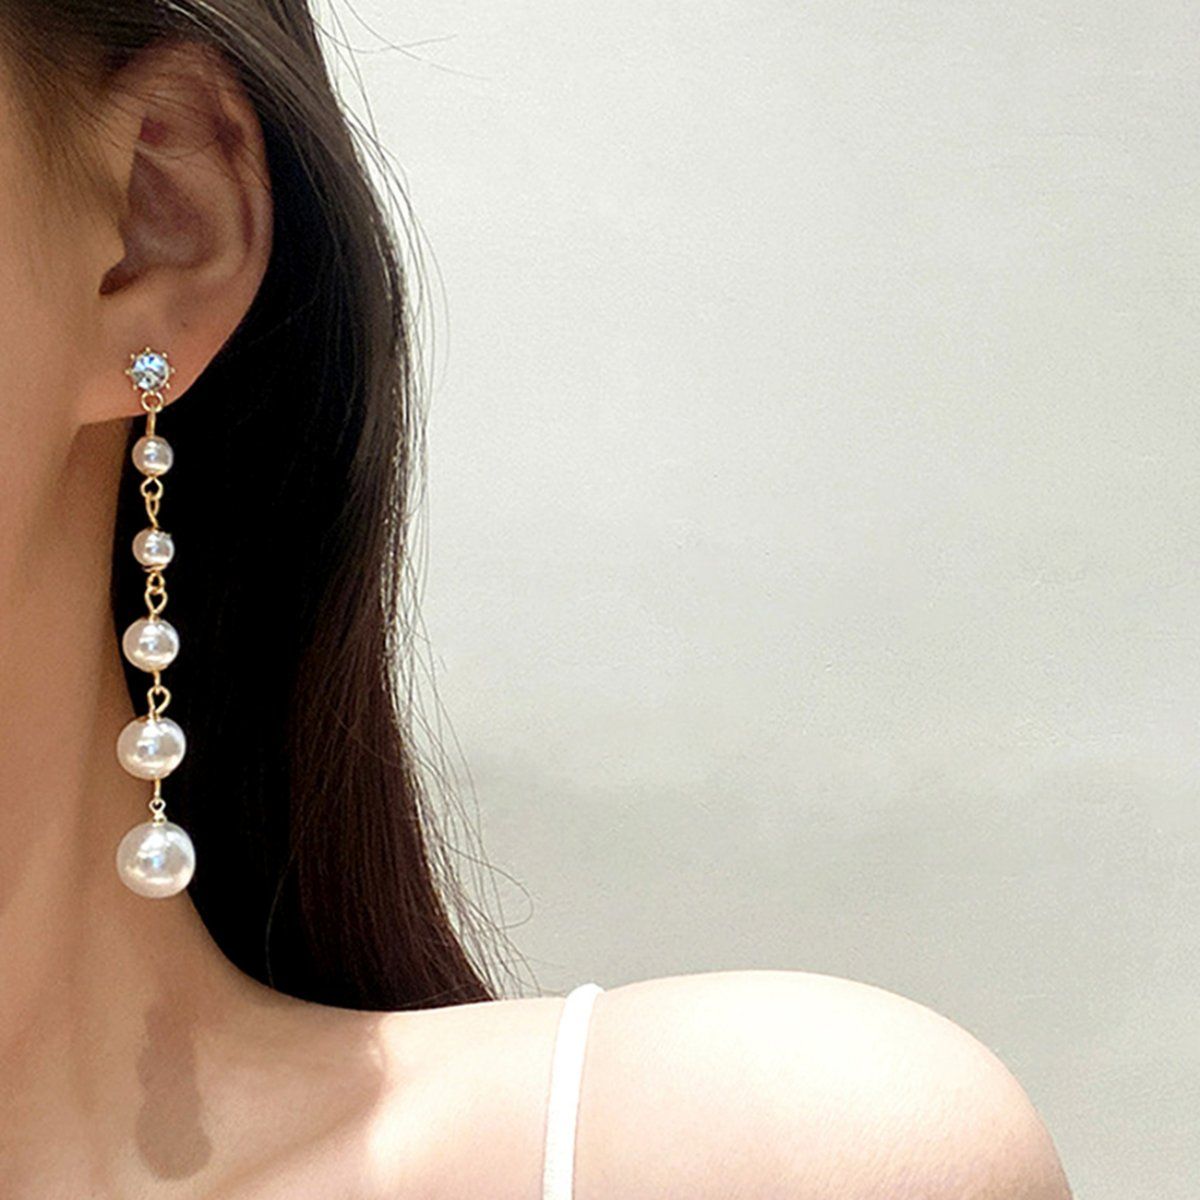 Buy Gold Earrings for Women by Silvermerc Designs Online  Ajiocom